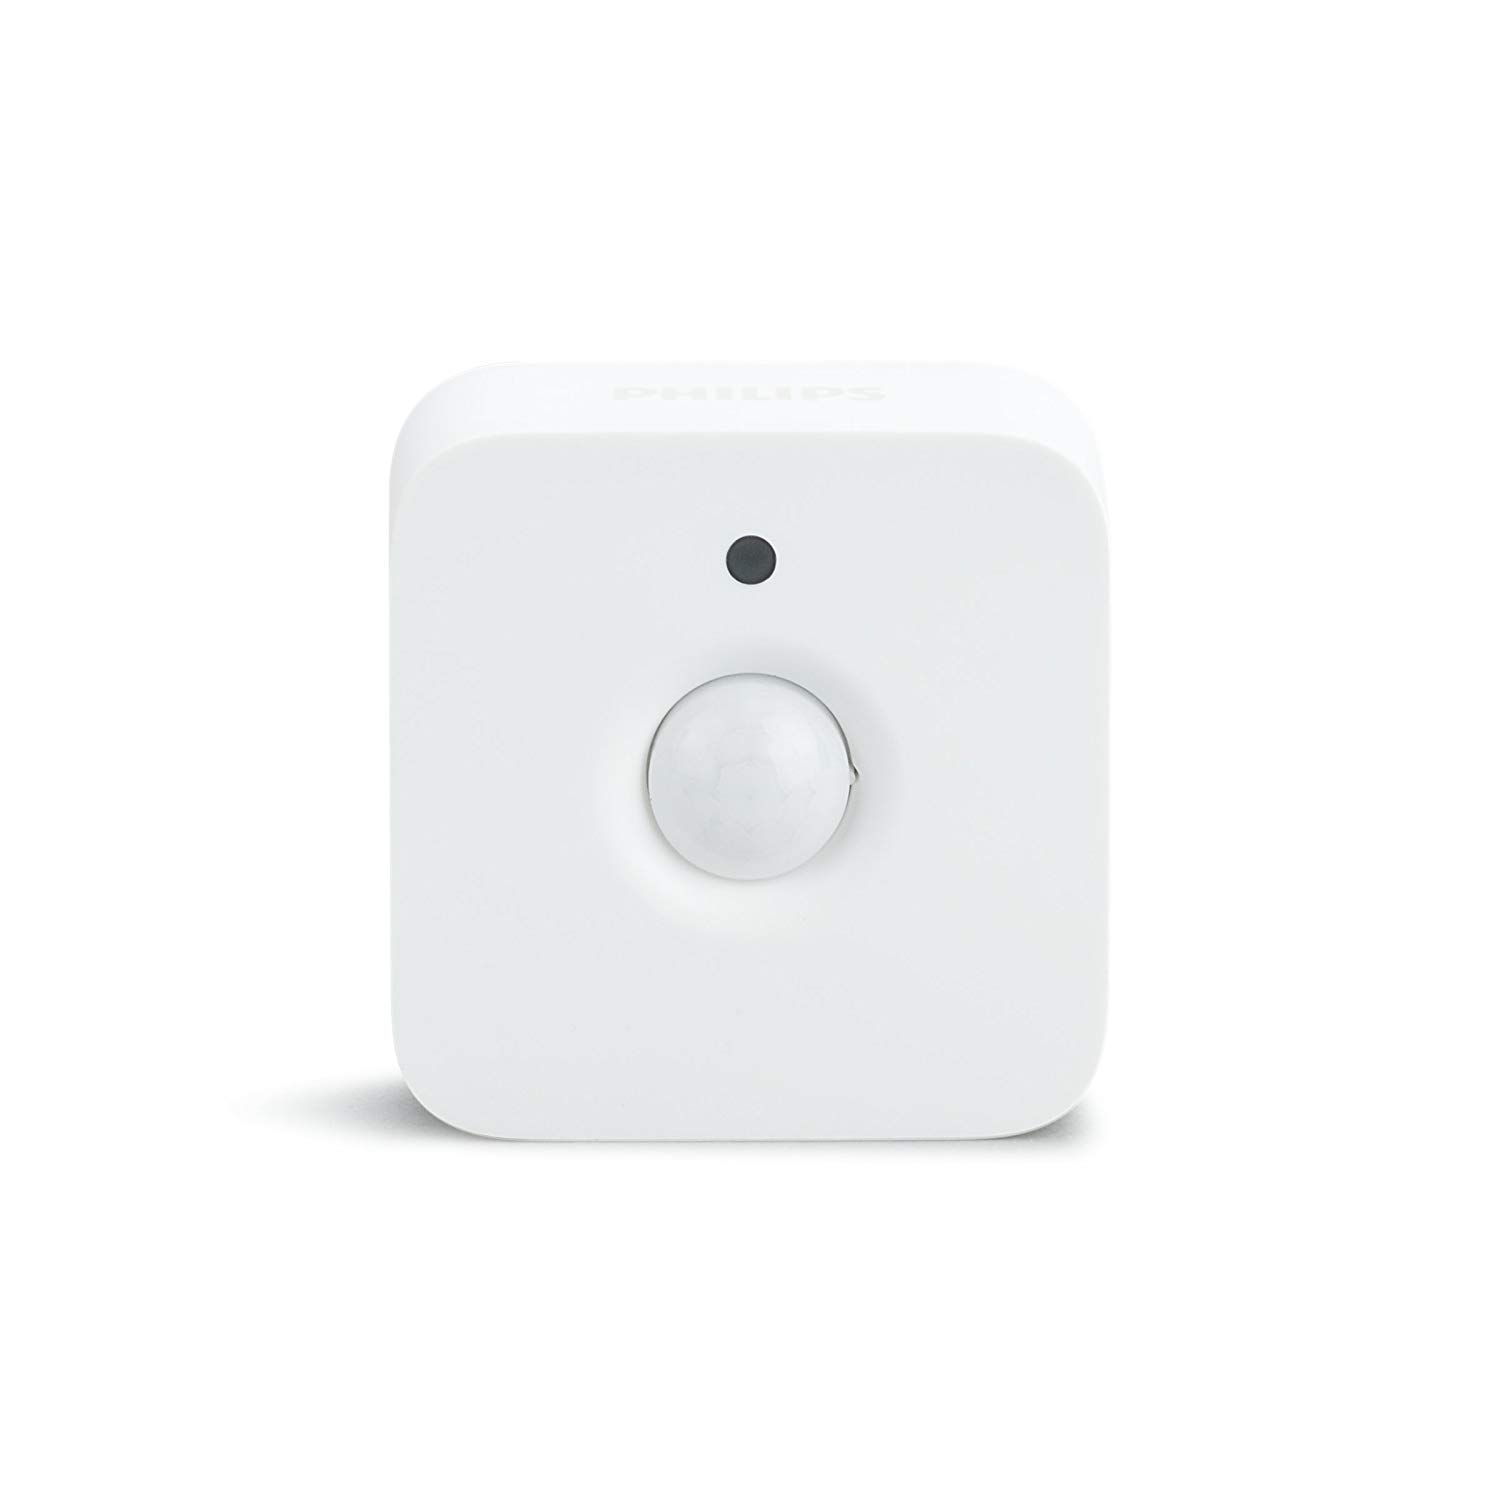 Philips Hue - Sensor de movimiento controlable vía WiFi, compatible con Amazon Alexa, Apple HomeKit y Google Assistant